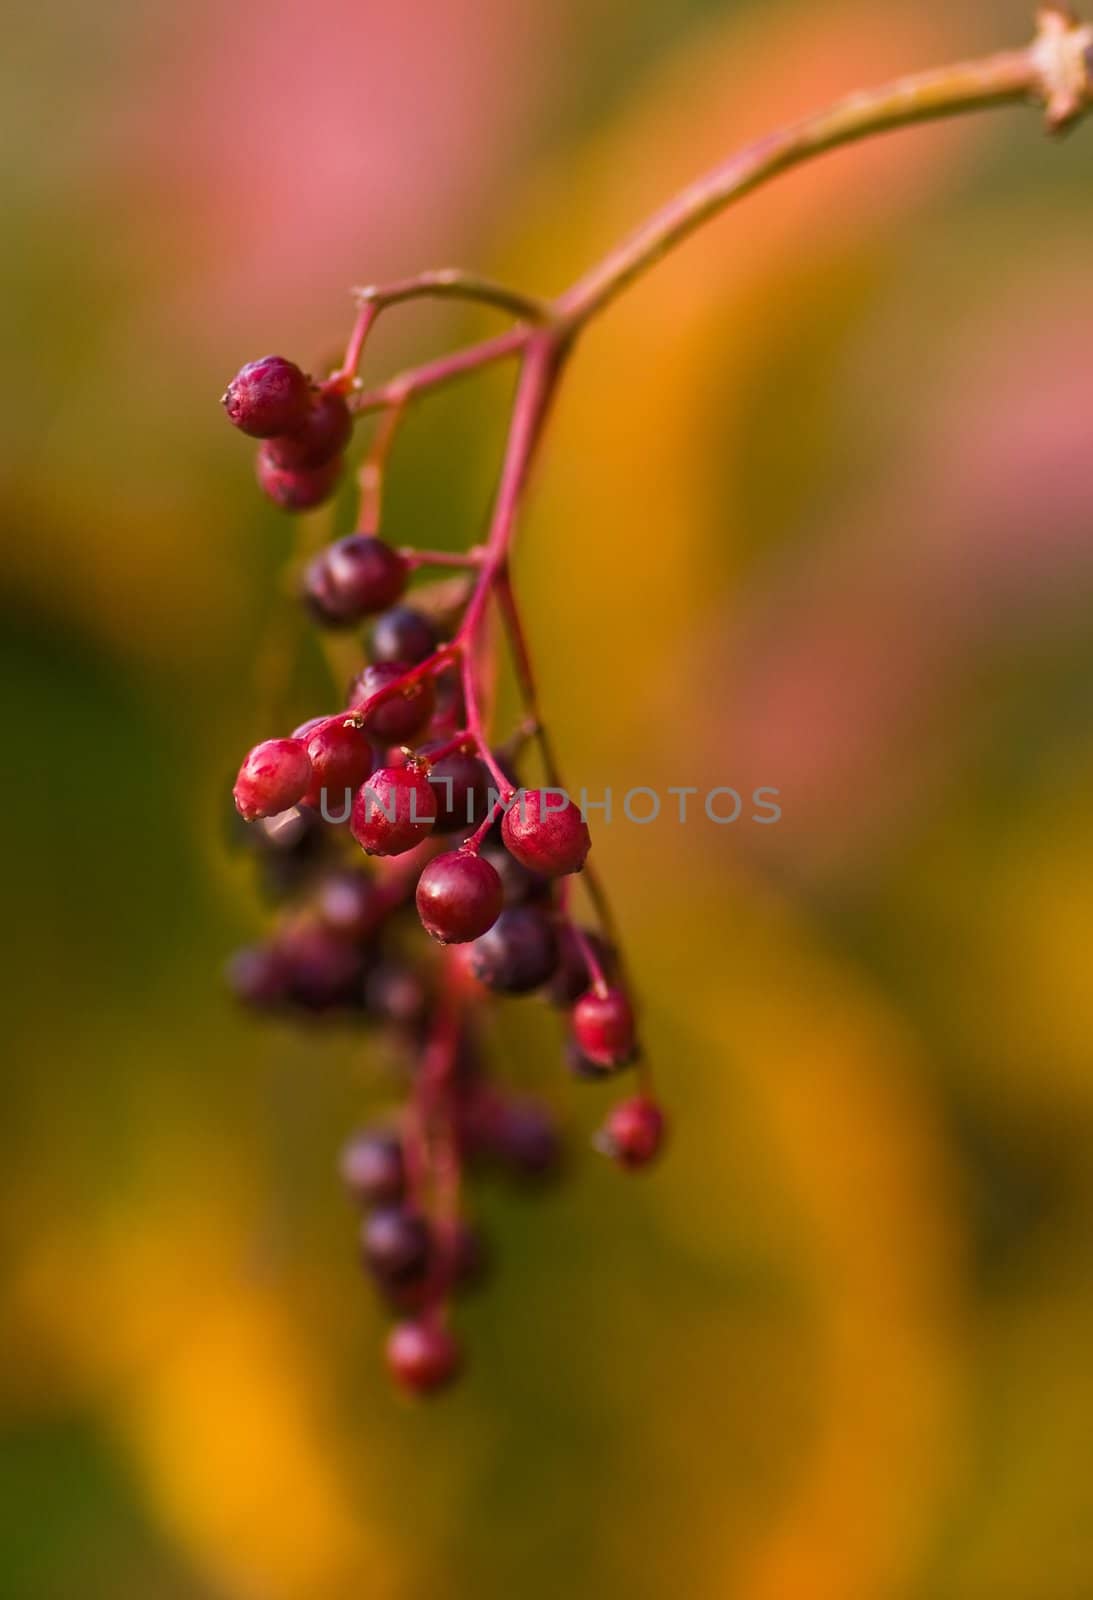 Elder berries by Colette